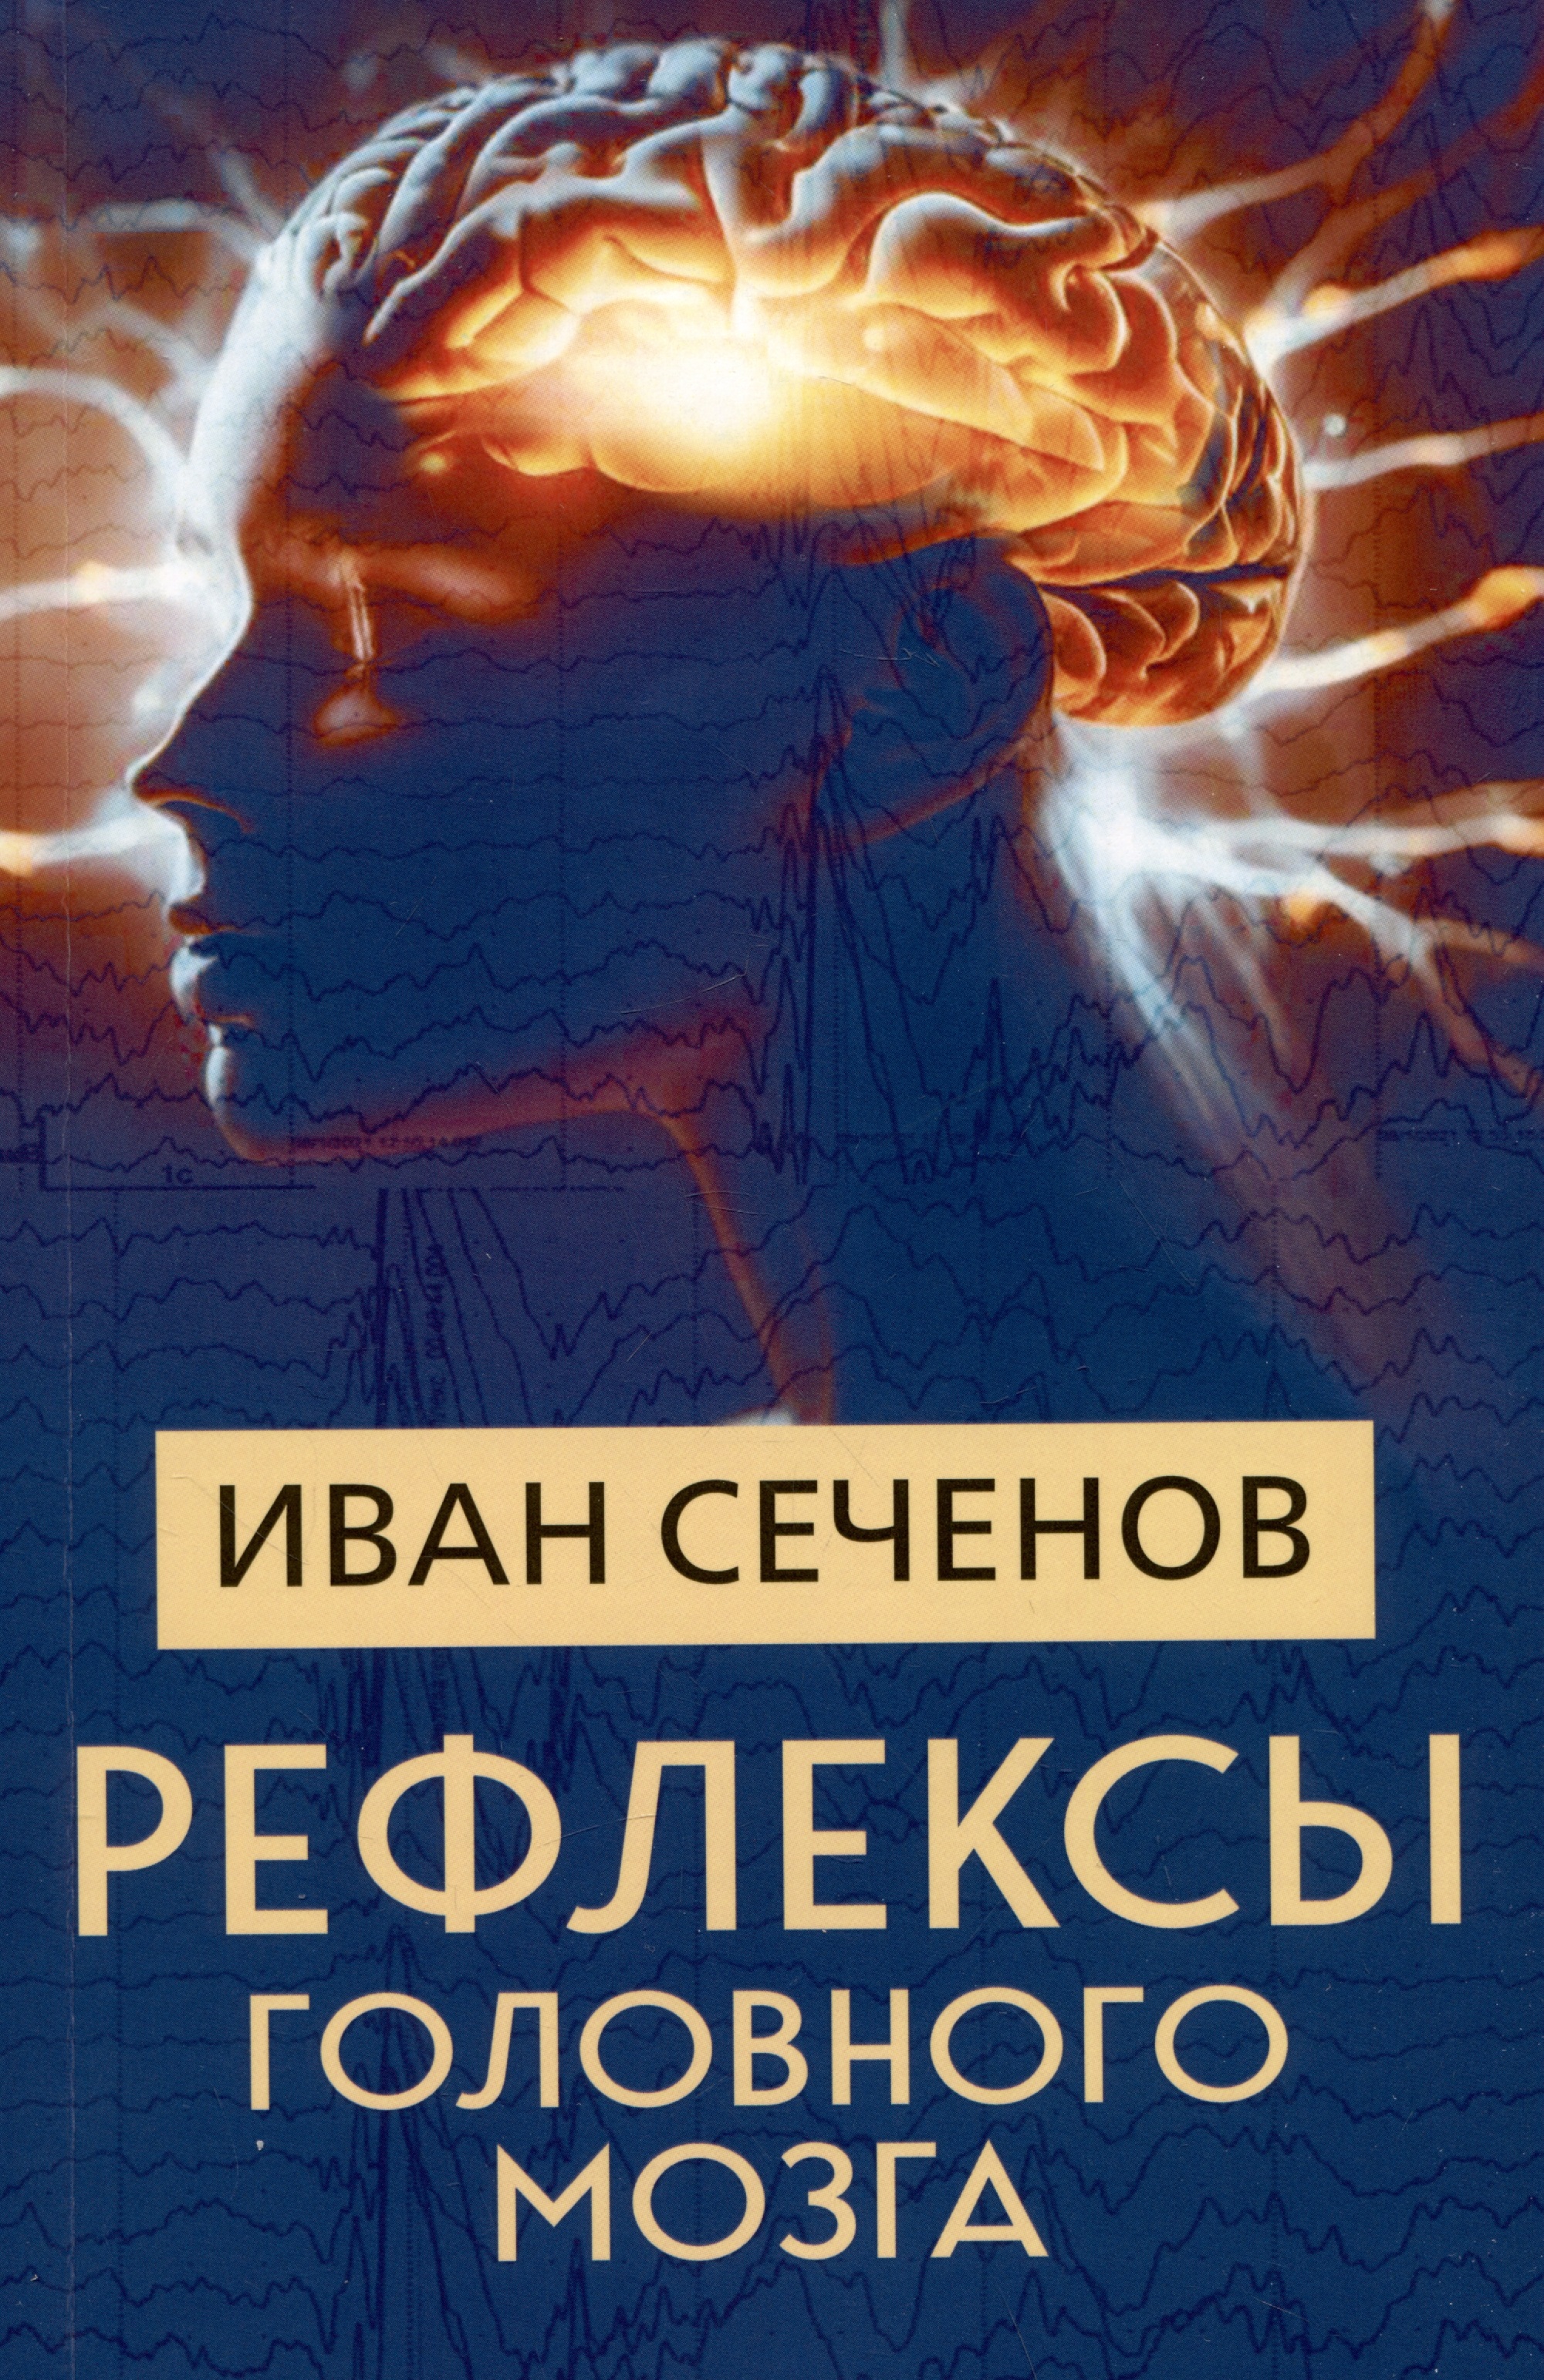 Сеченов Иван Михайлович - Рефлексы головного мозга